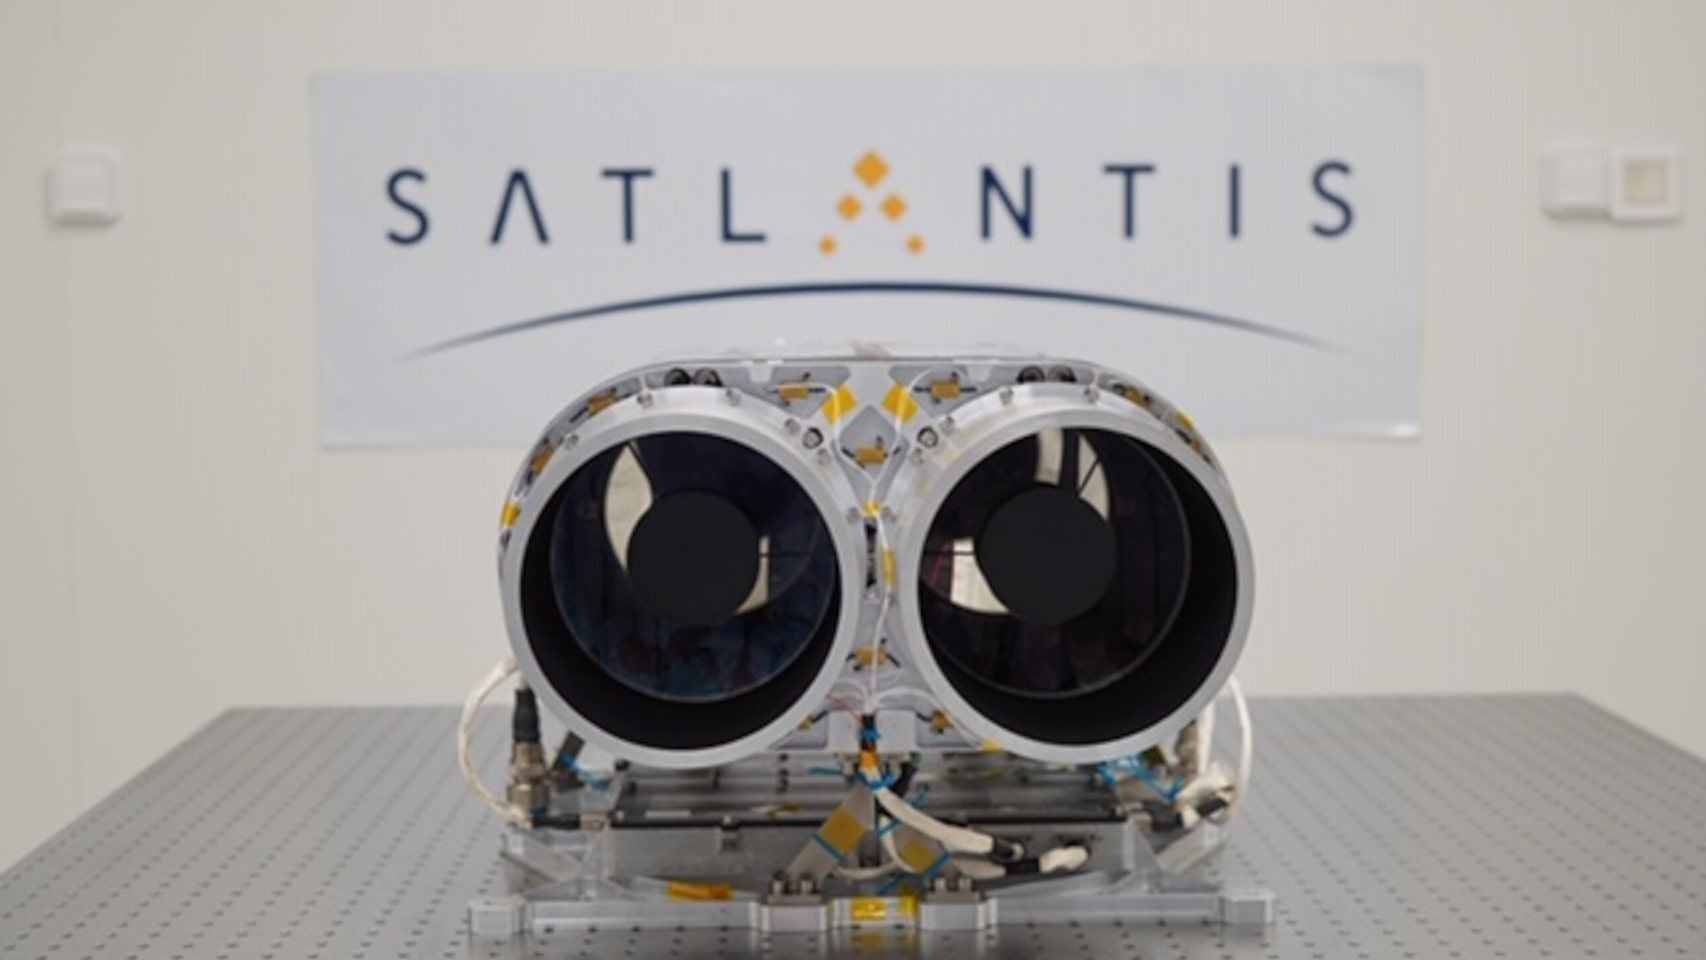 La cámara ha sido desarrollada por Satlantis, una empresa vasca